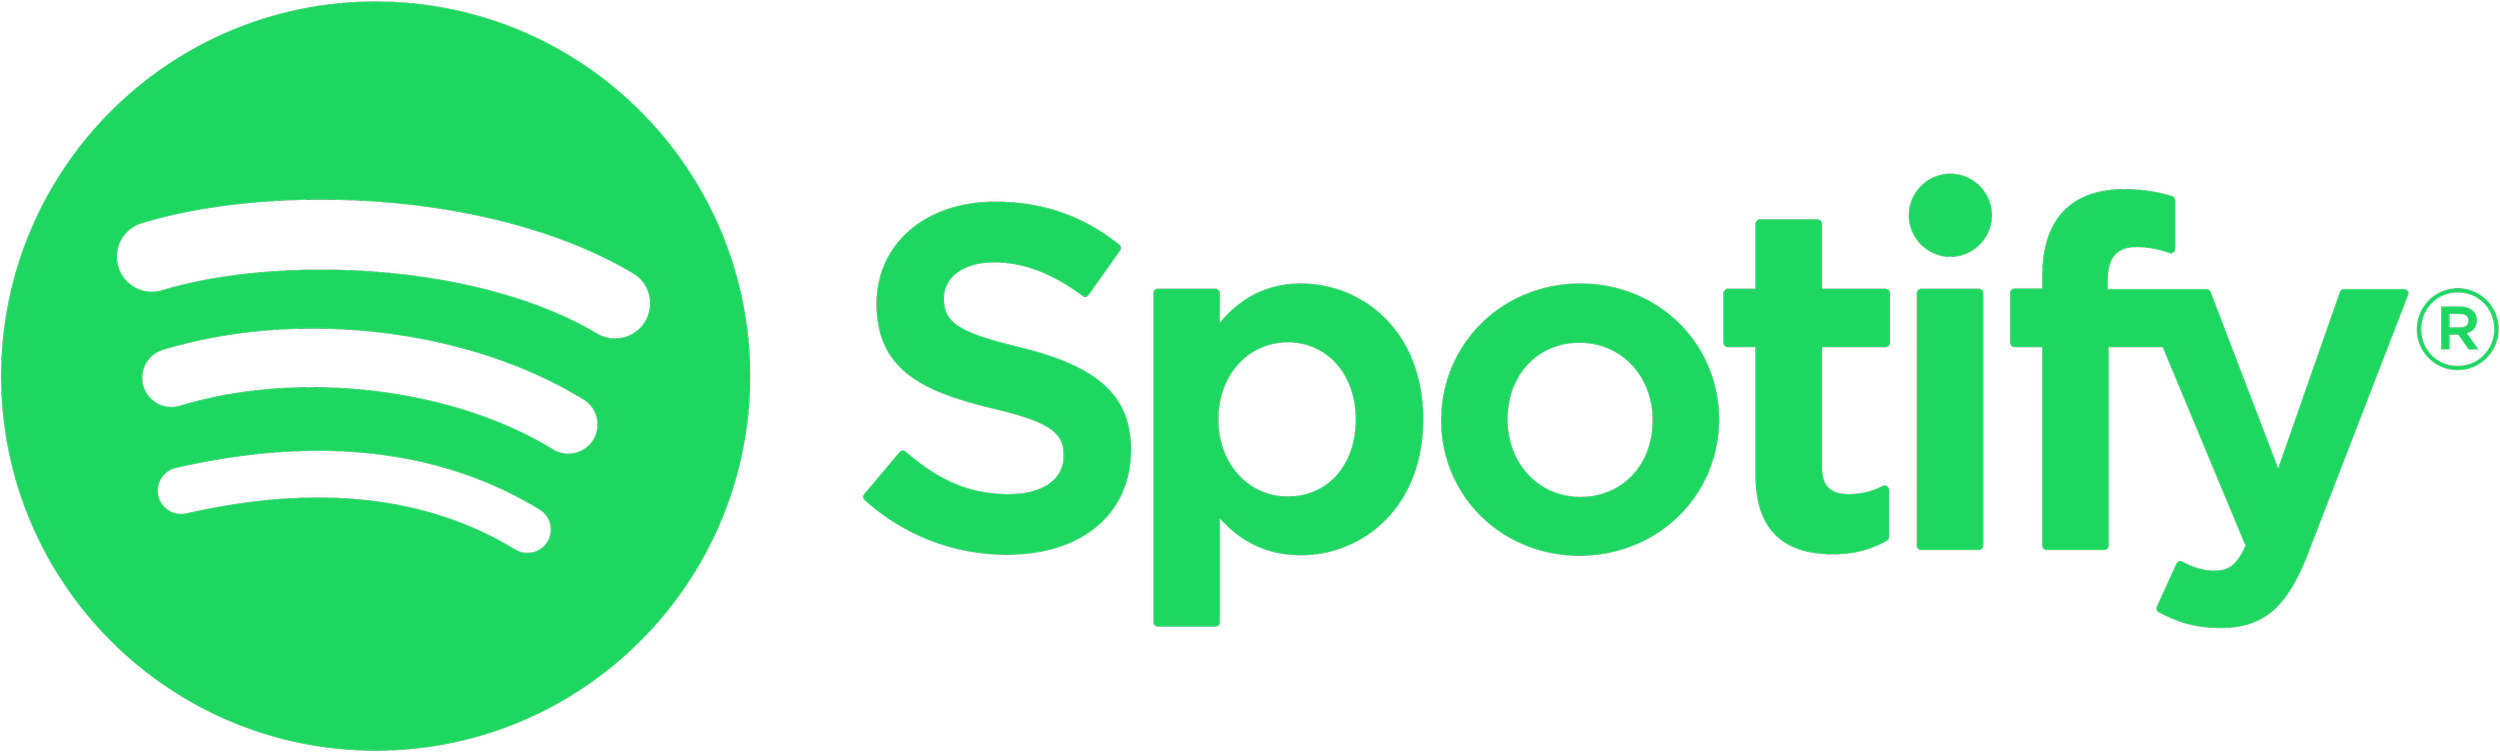 Spotify-logo.png